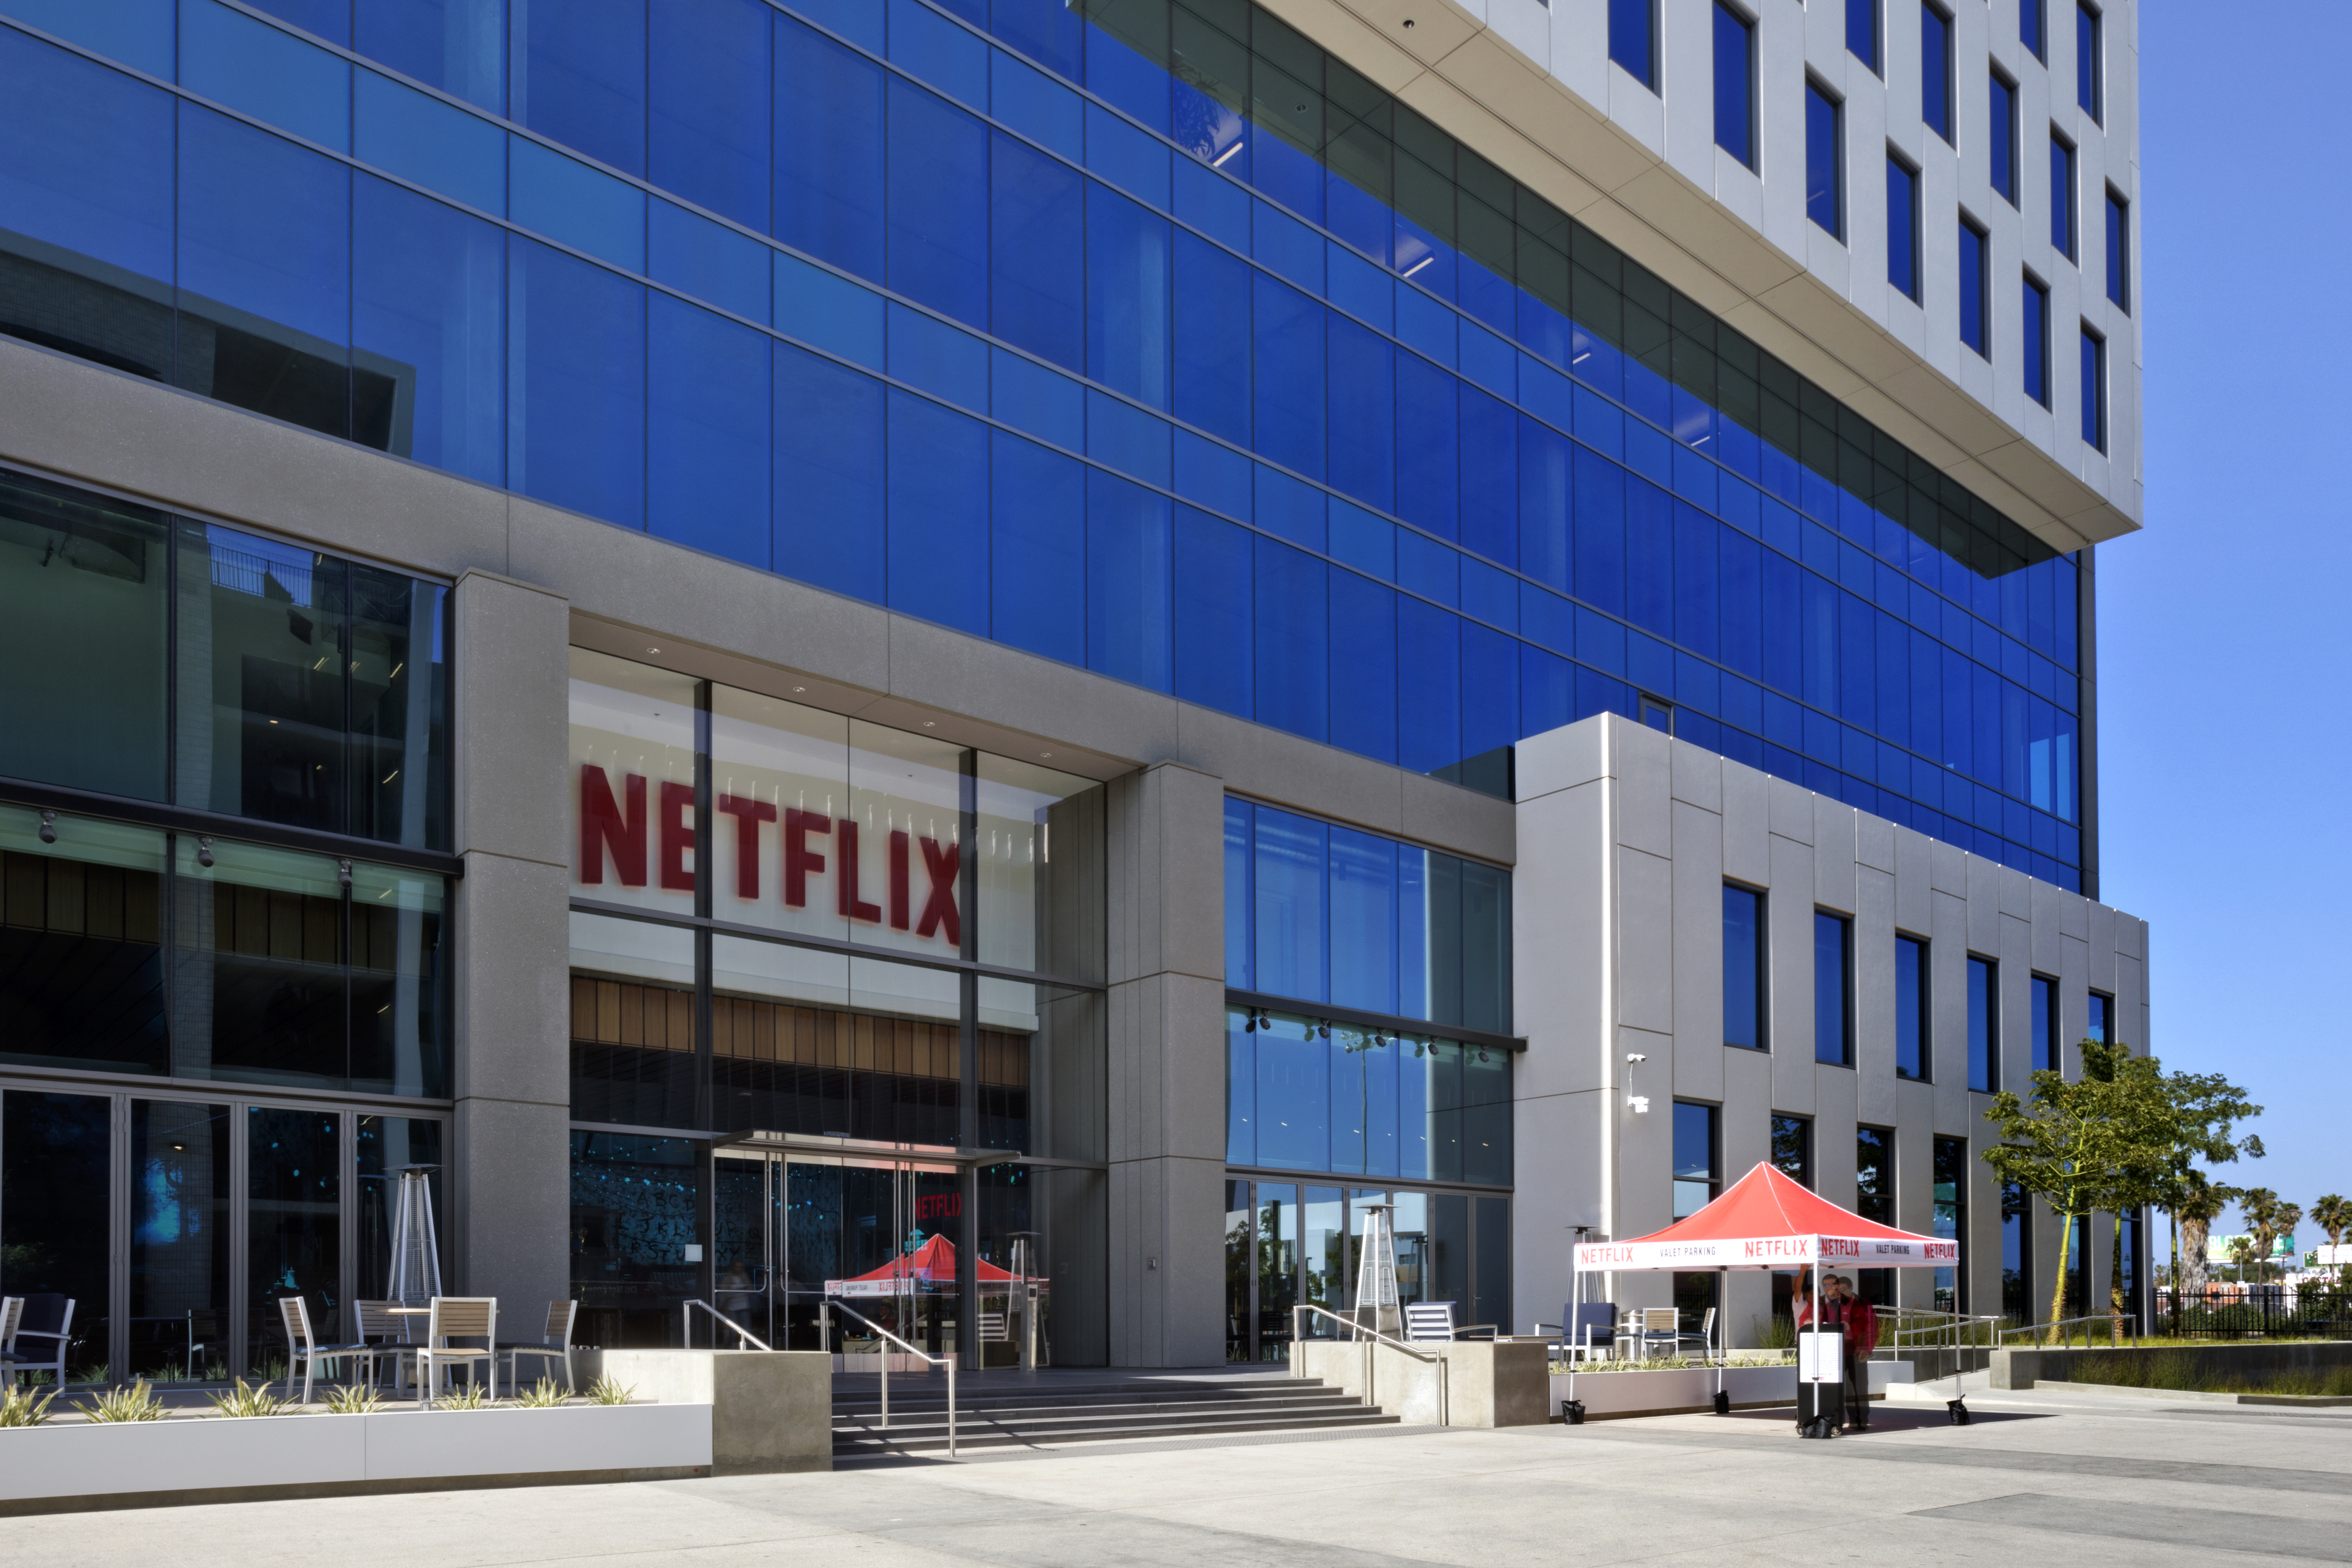 About Netflix - Company Assets